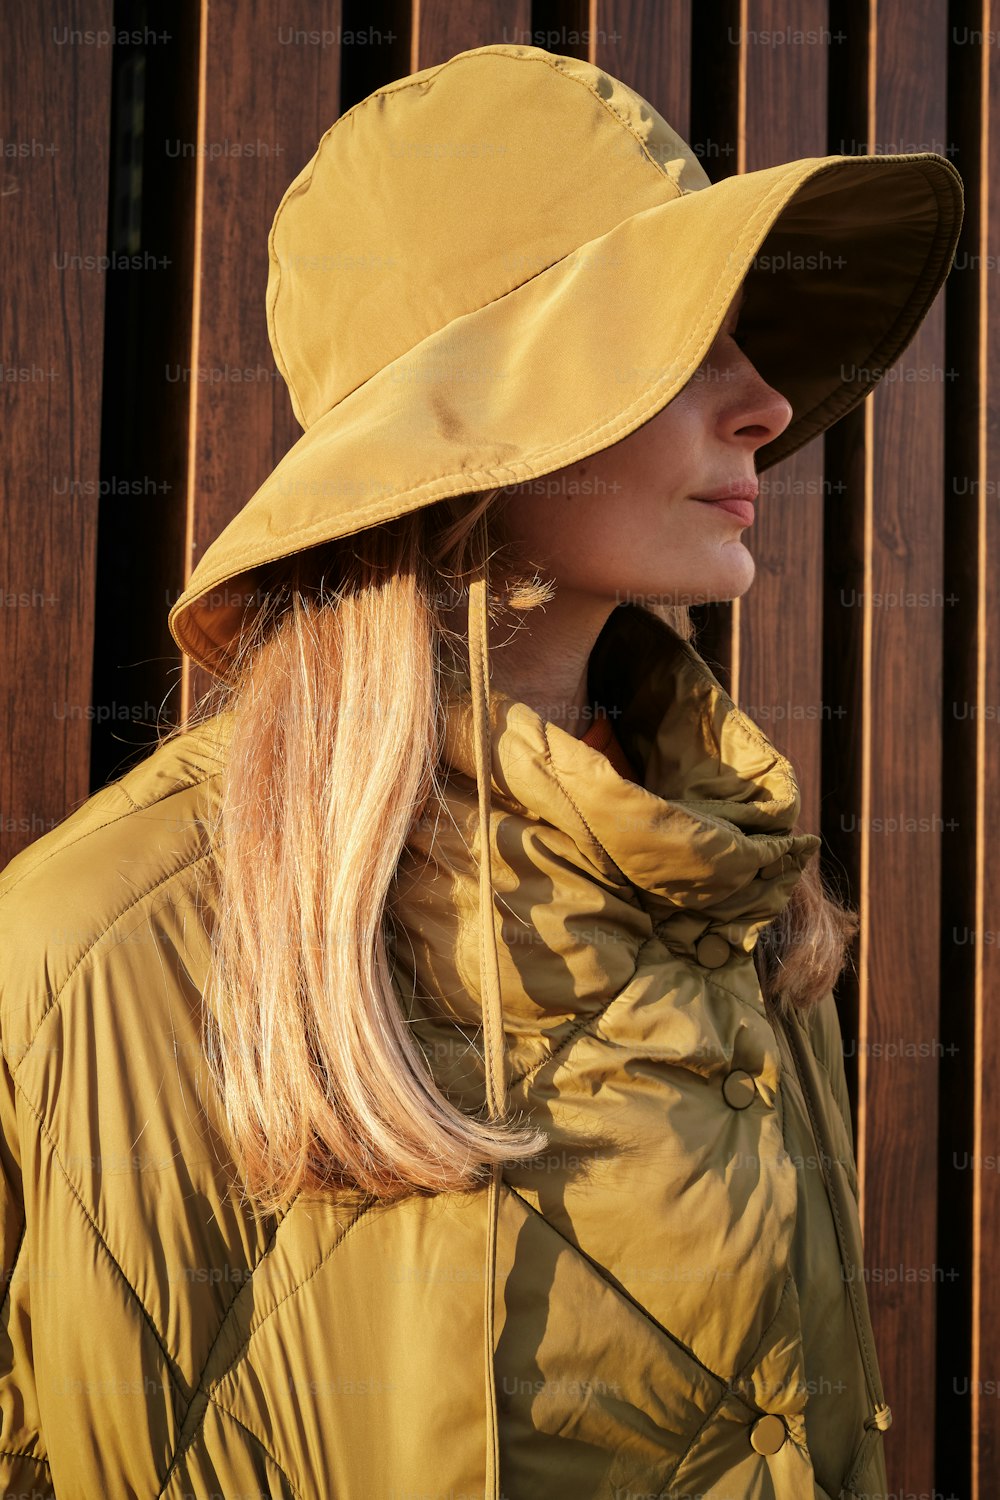 Una donna che indossa un cappello giallo e una giacca